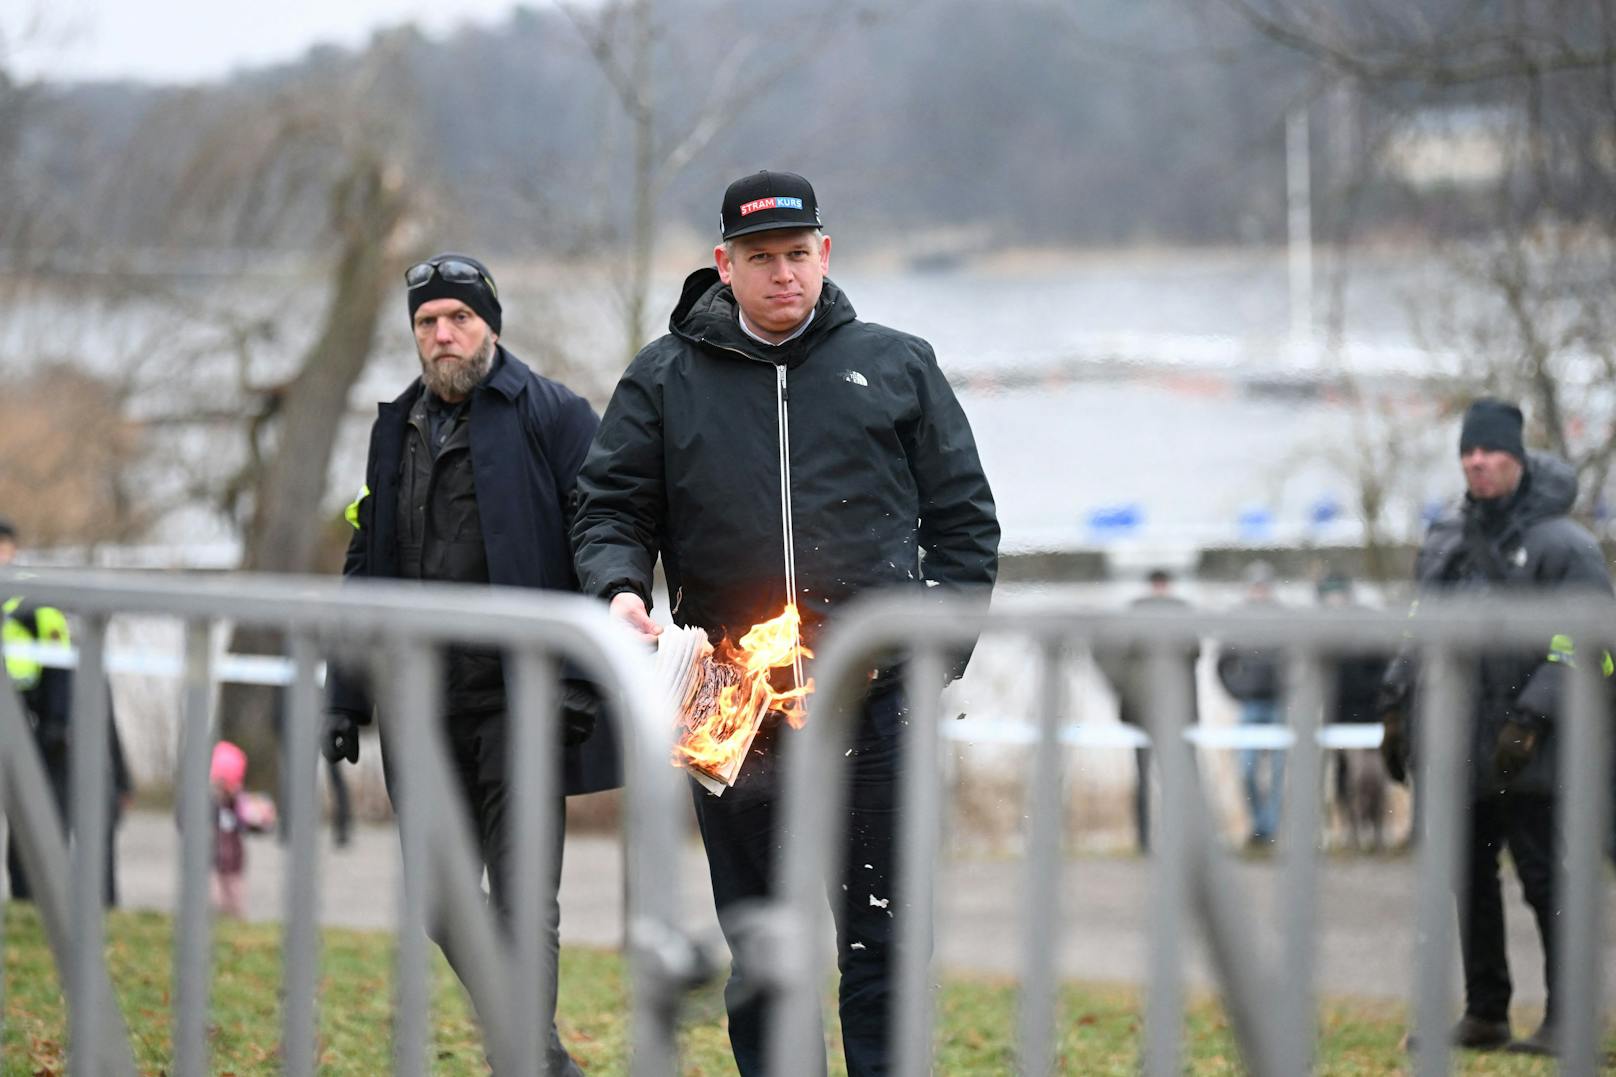 Am Samstag kam es in Stockholm zu einer Demo von Rechtsextremisten, bei der eine Ausgabe des Koran verbrannt wurde.